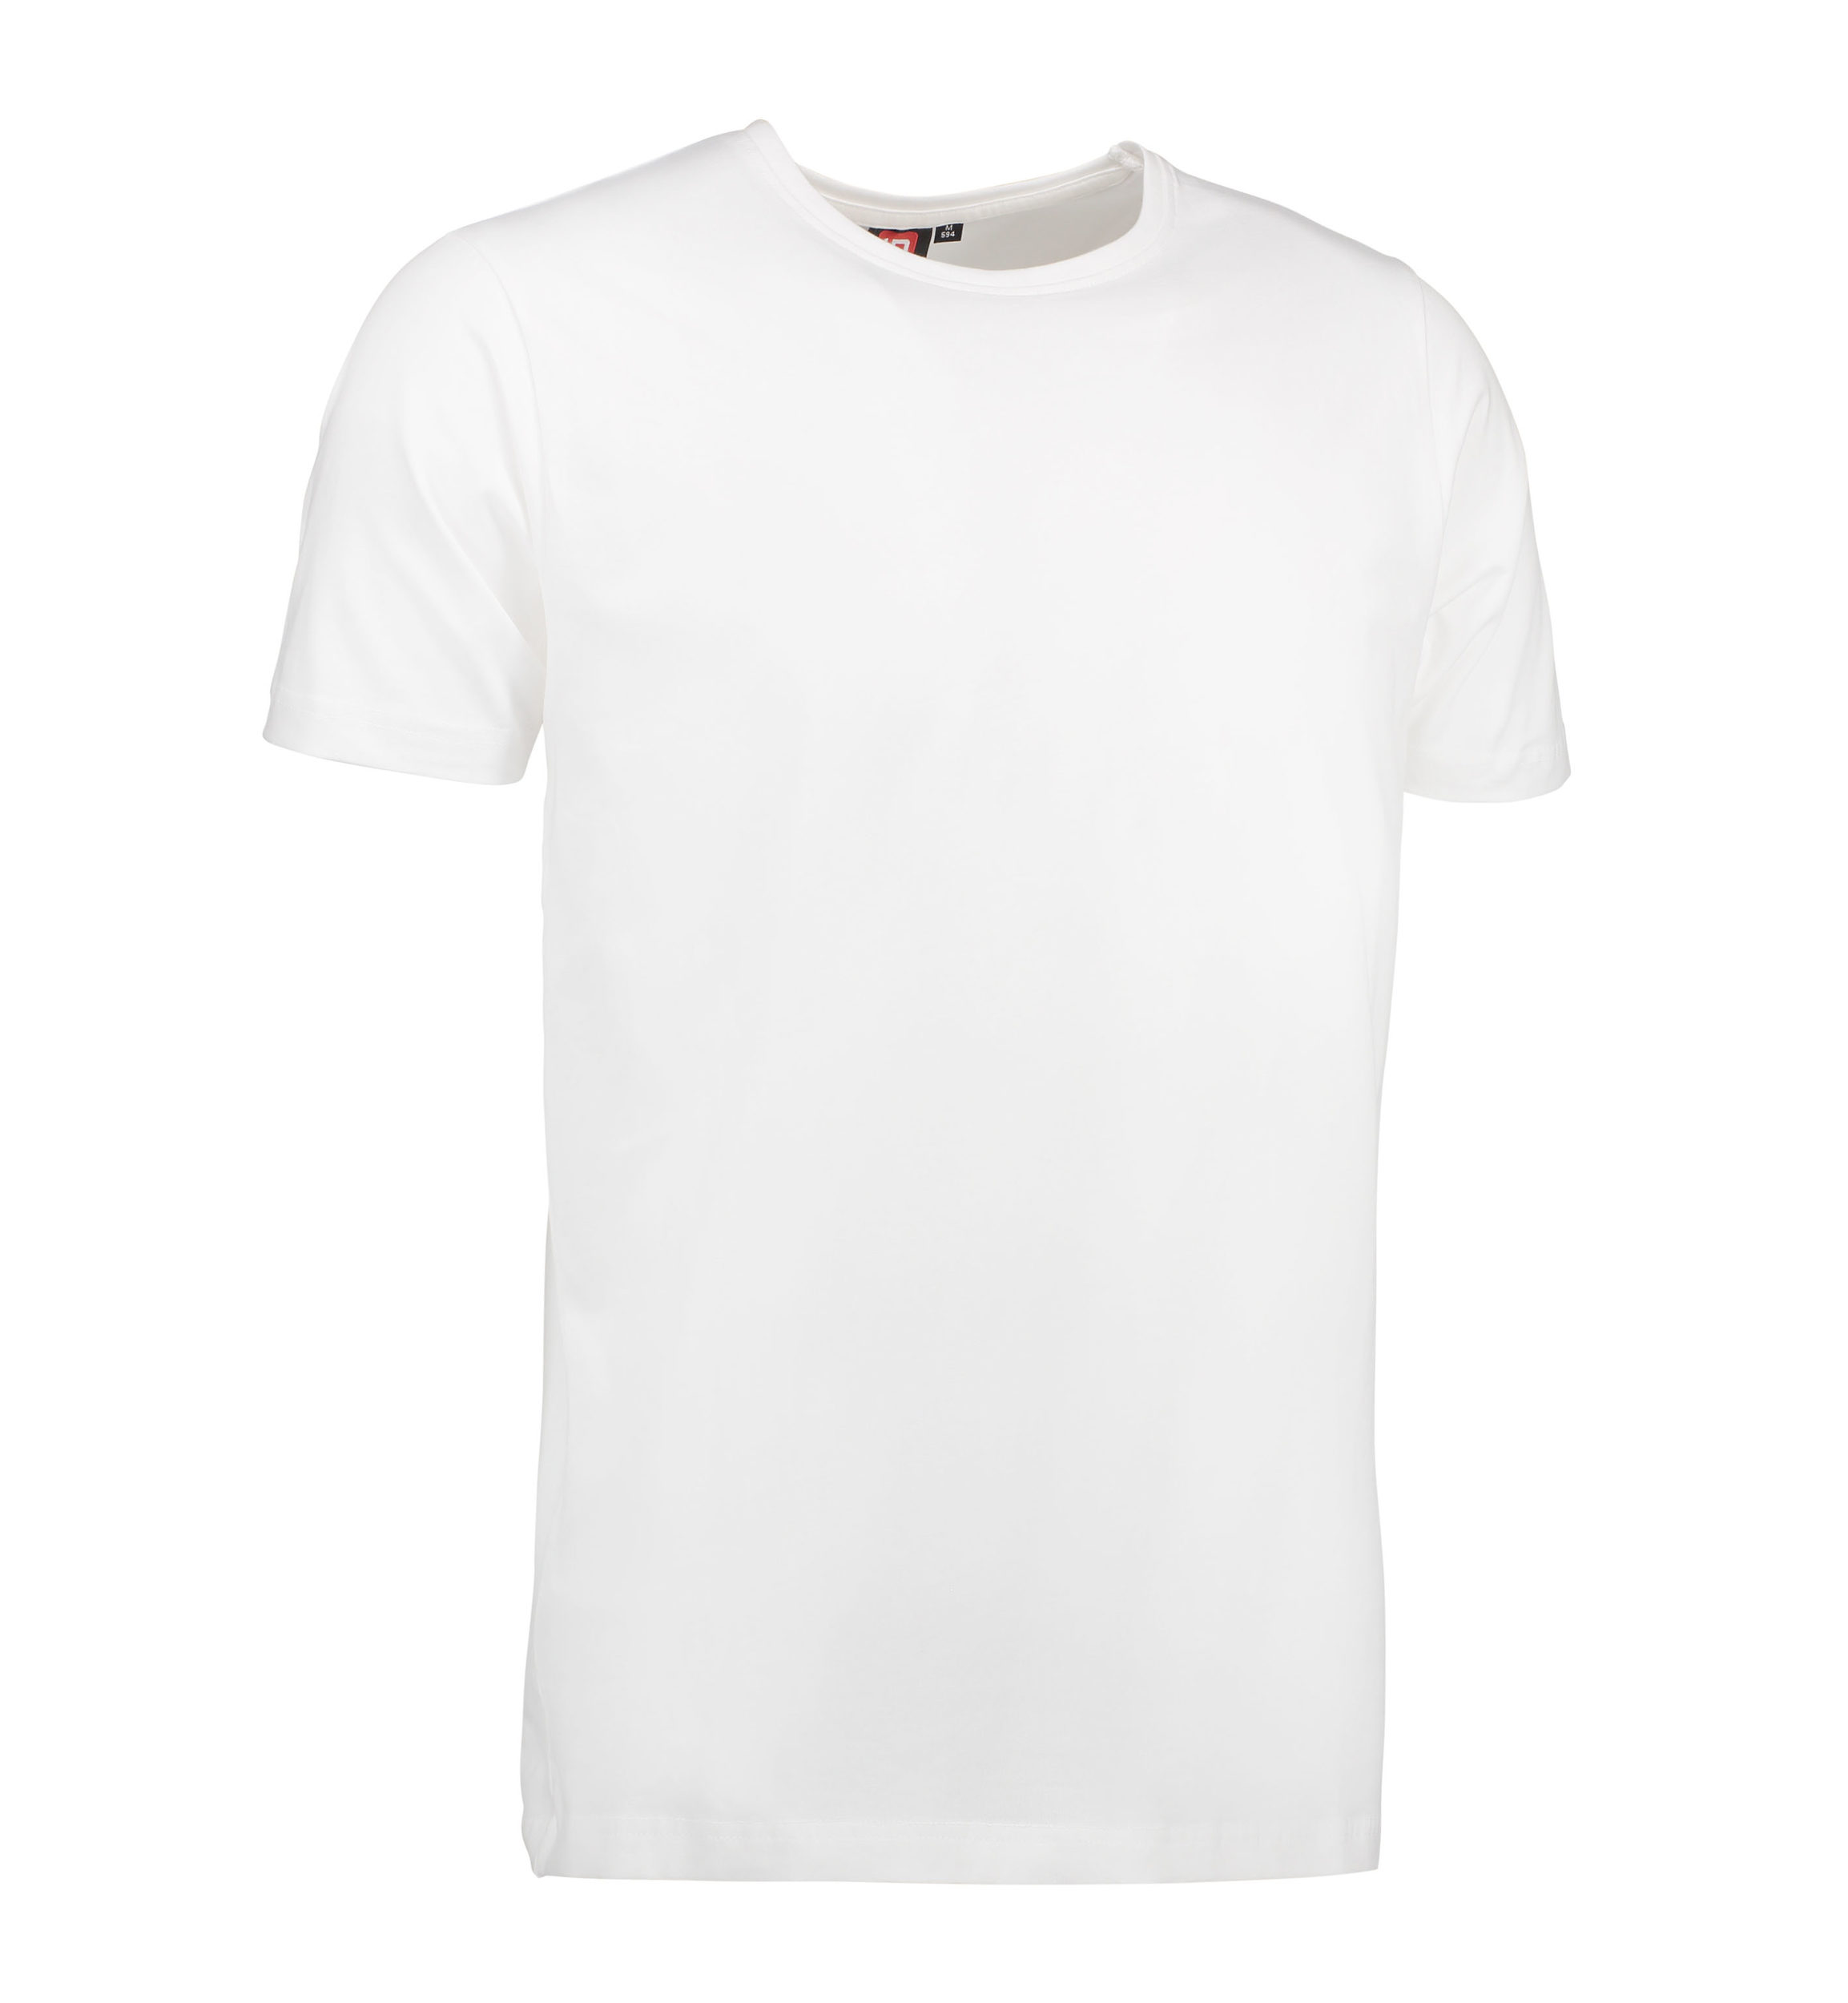 Billede af Stretch t-shirt til mænd i hvid - 3XL hos Sygeplejebutikken.dk